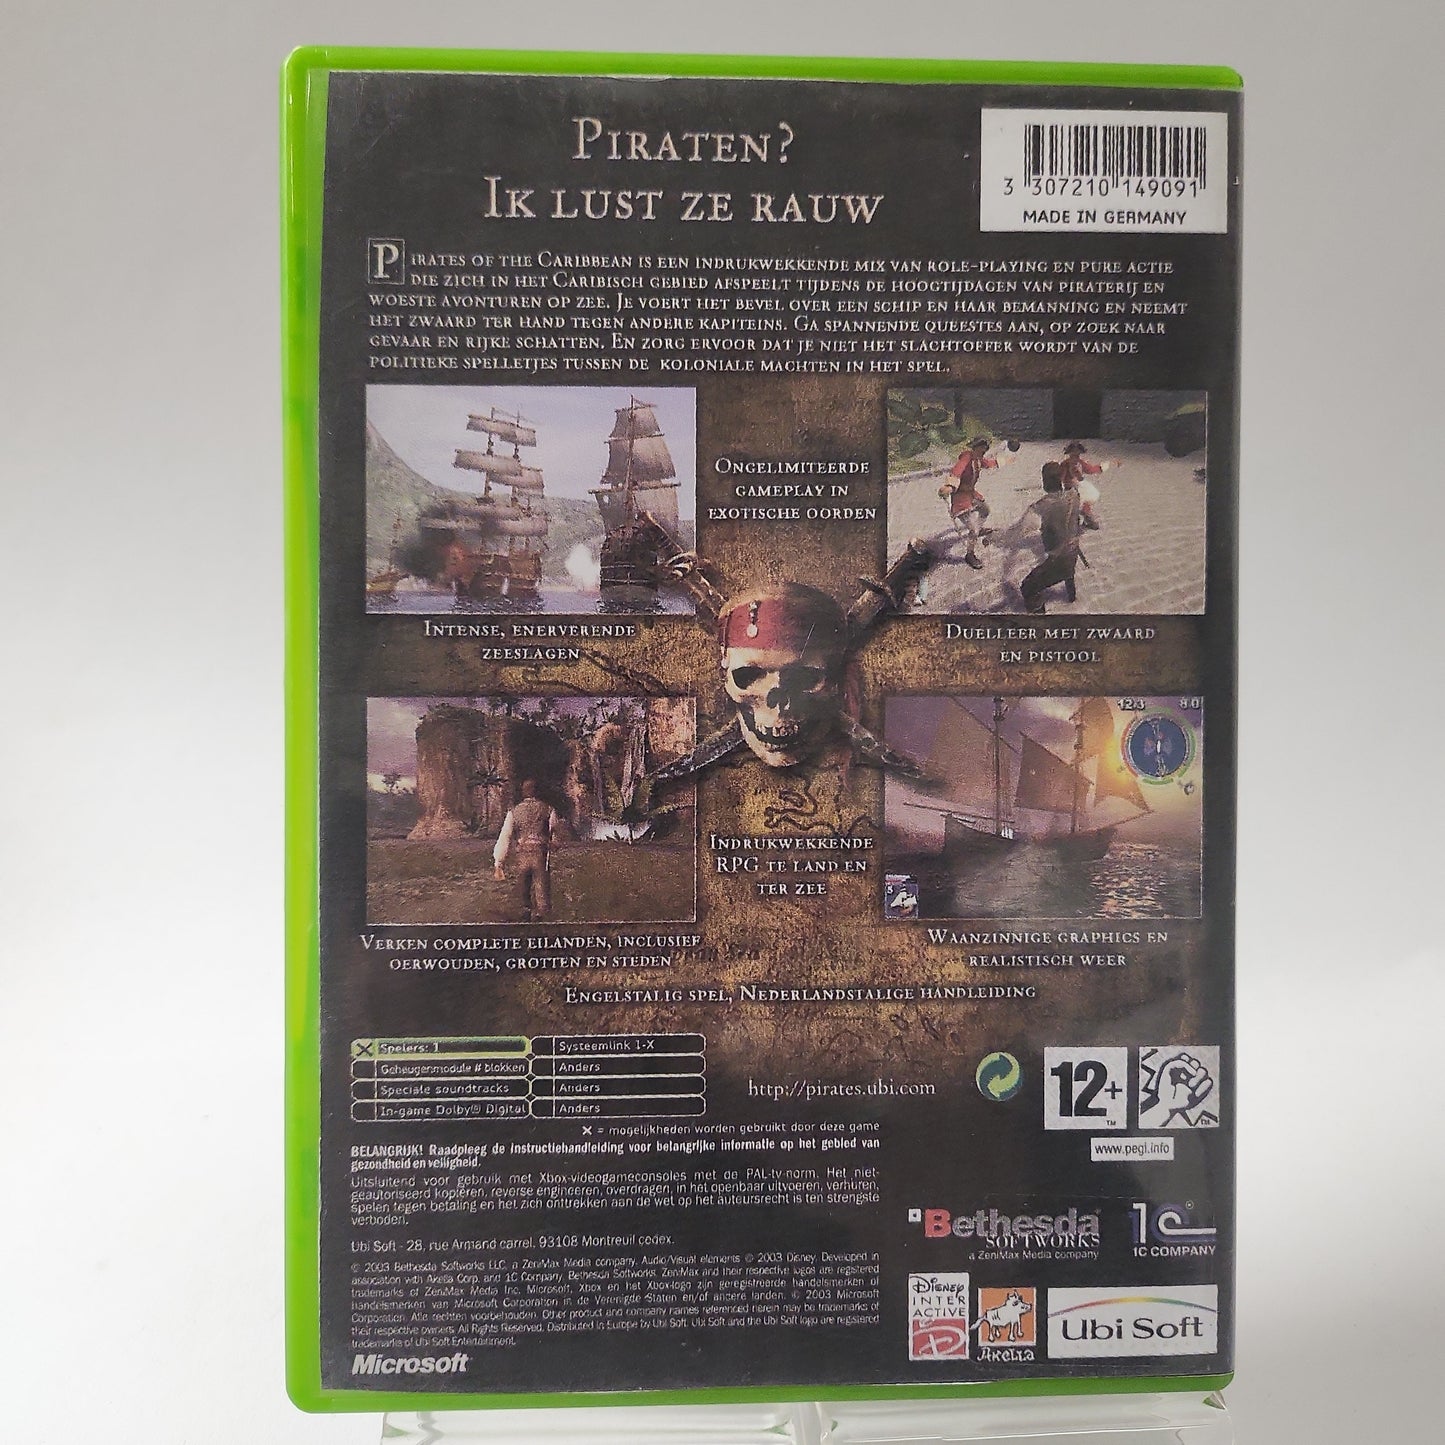 Pirates of the Caribbean (No Book) Copy Cover Xbox Original